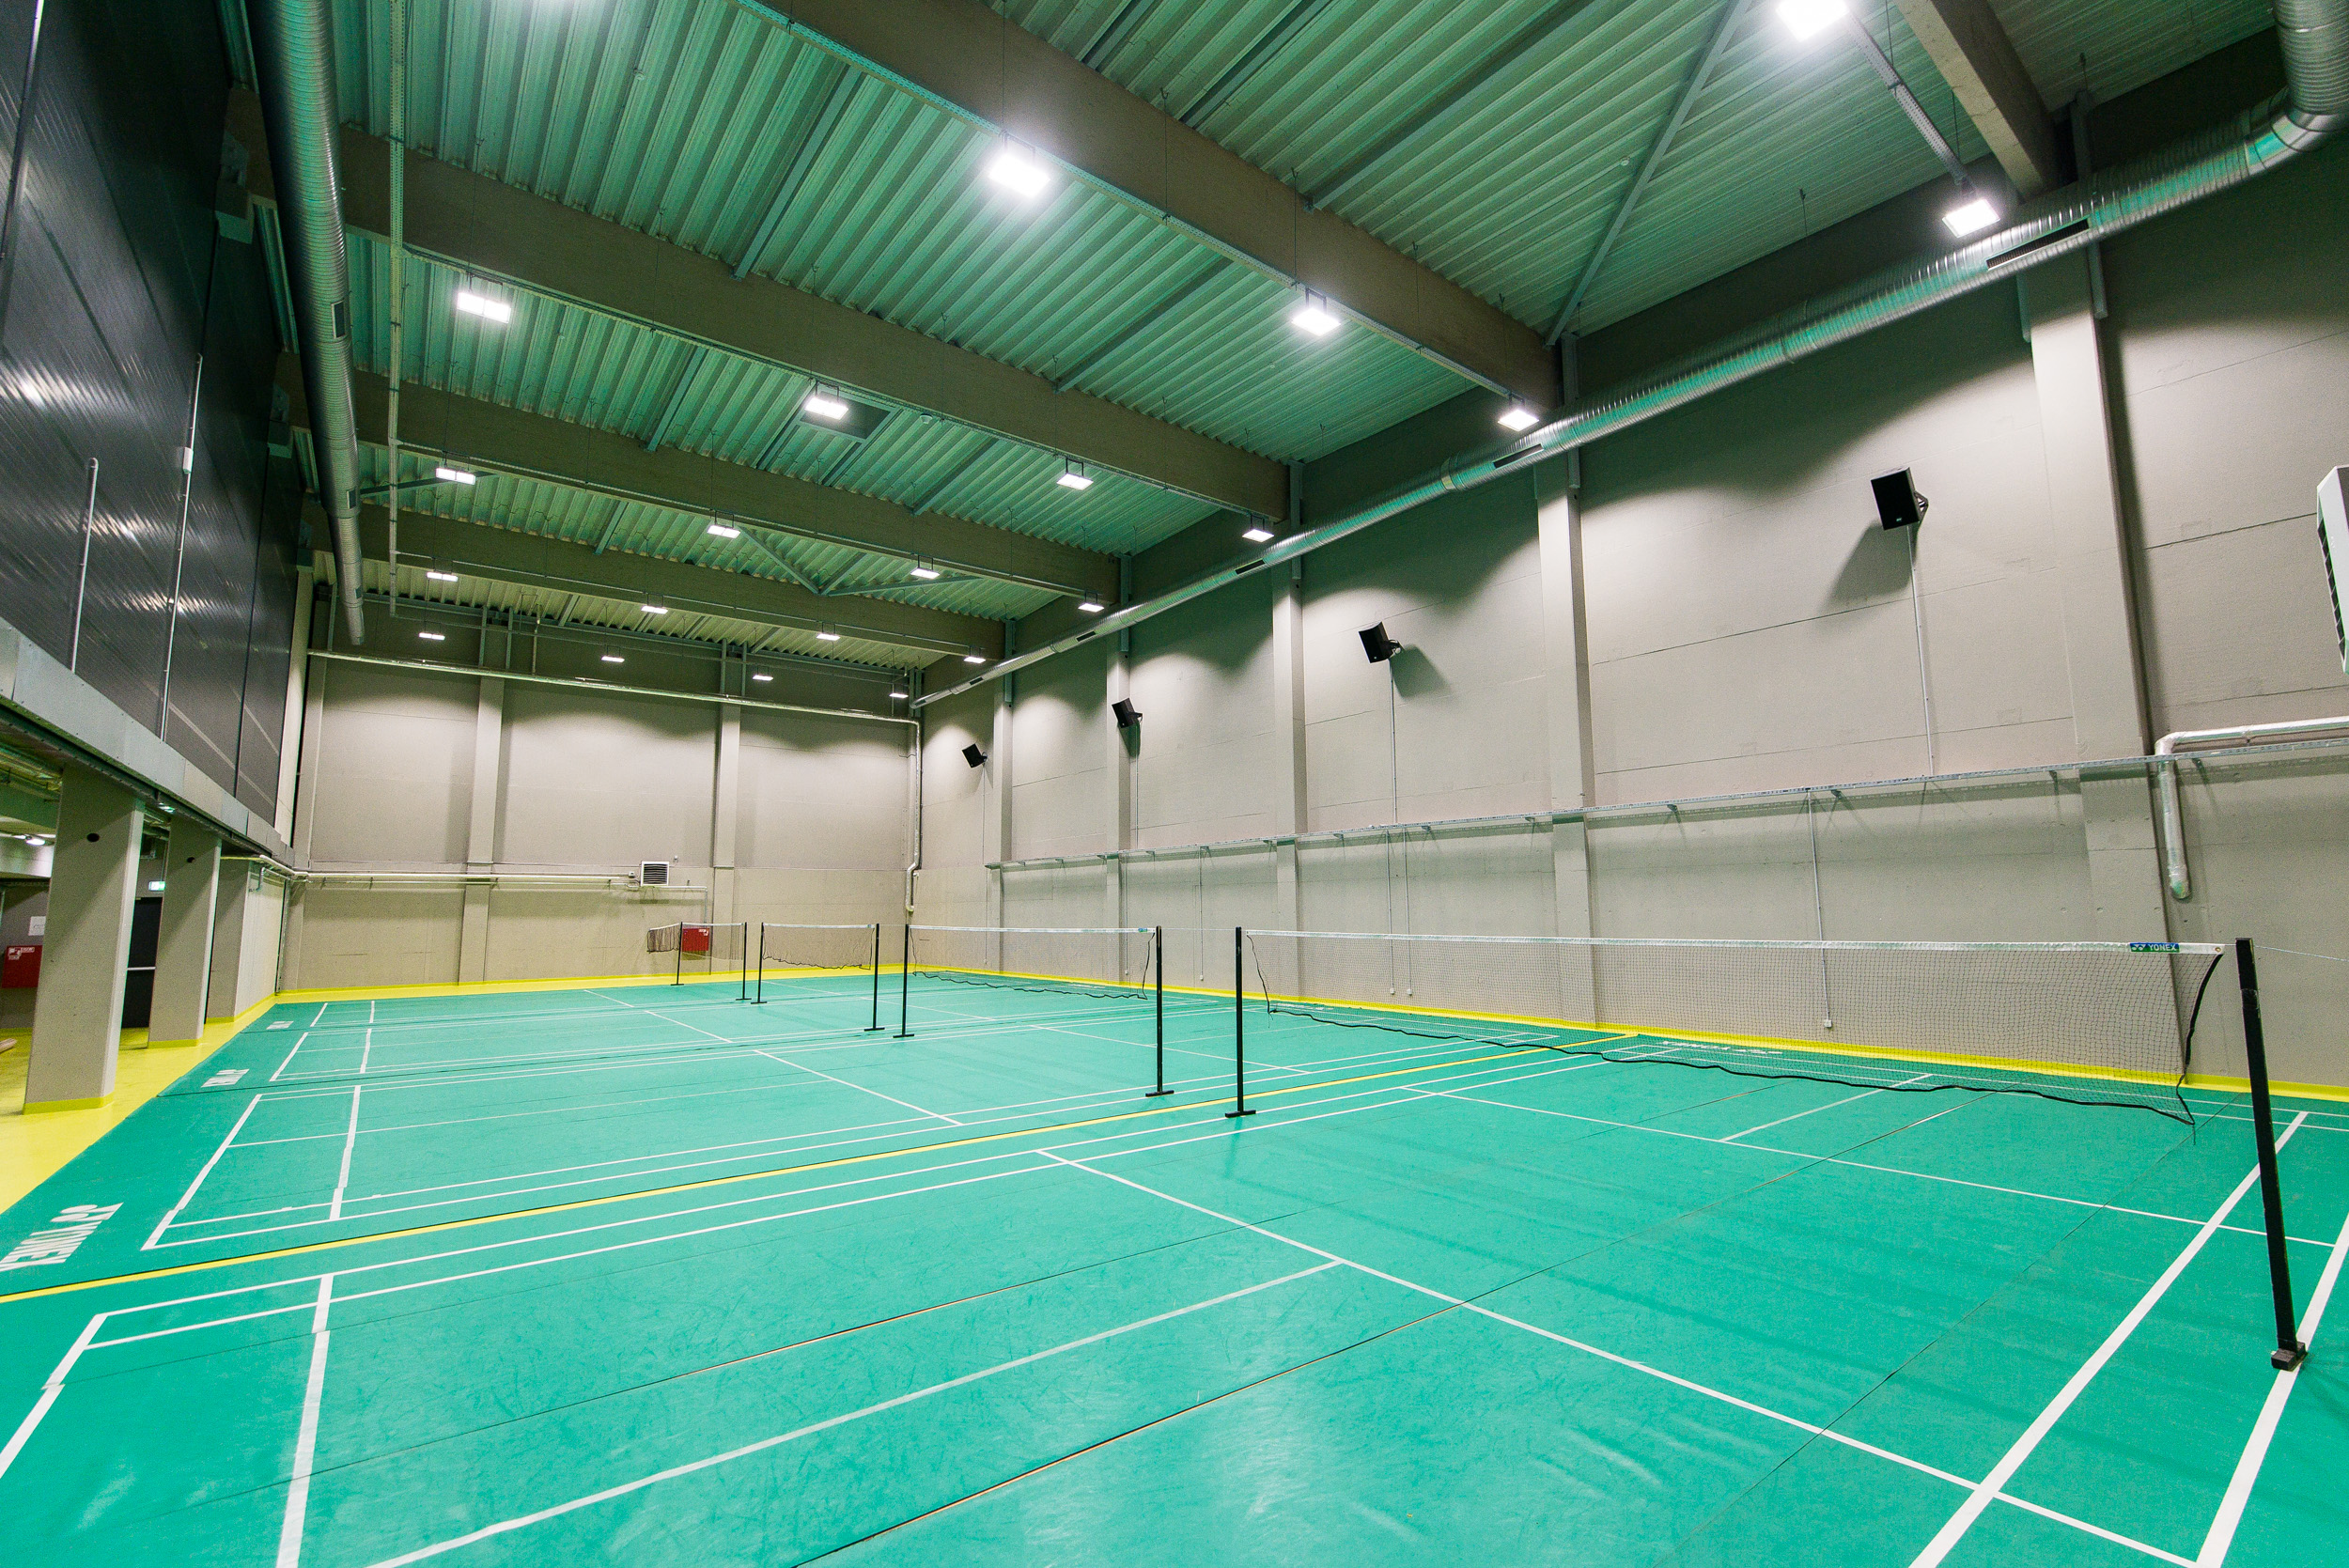 Nuo rugpjūčio 3 d. Kauno ledo rūmuose bus galima žaisti badmintoną